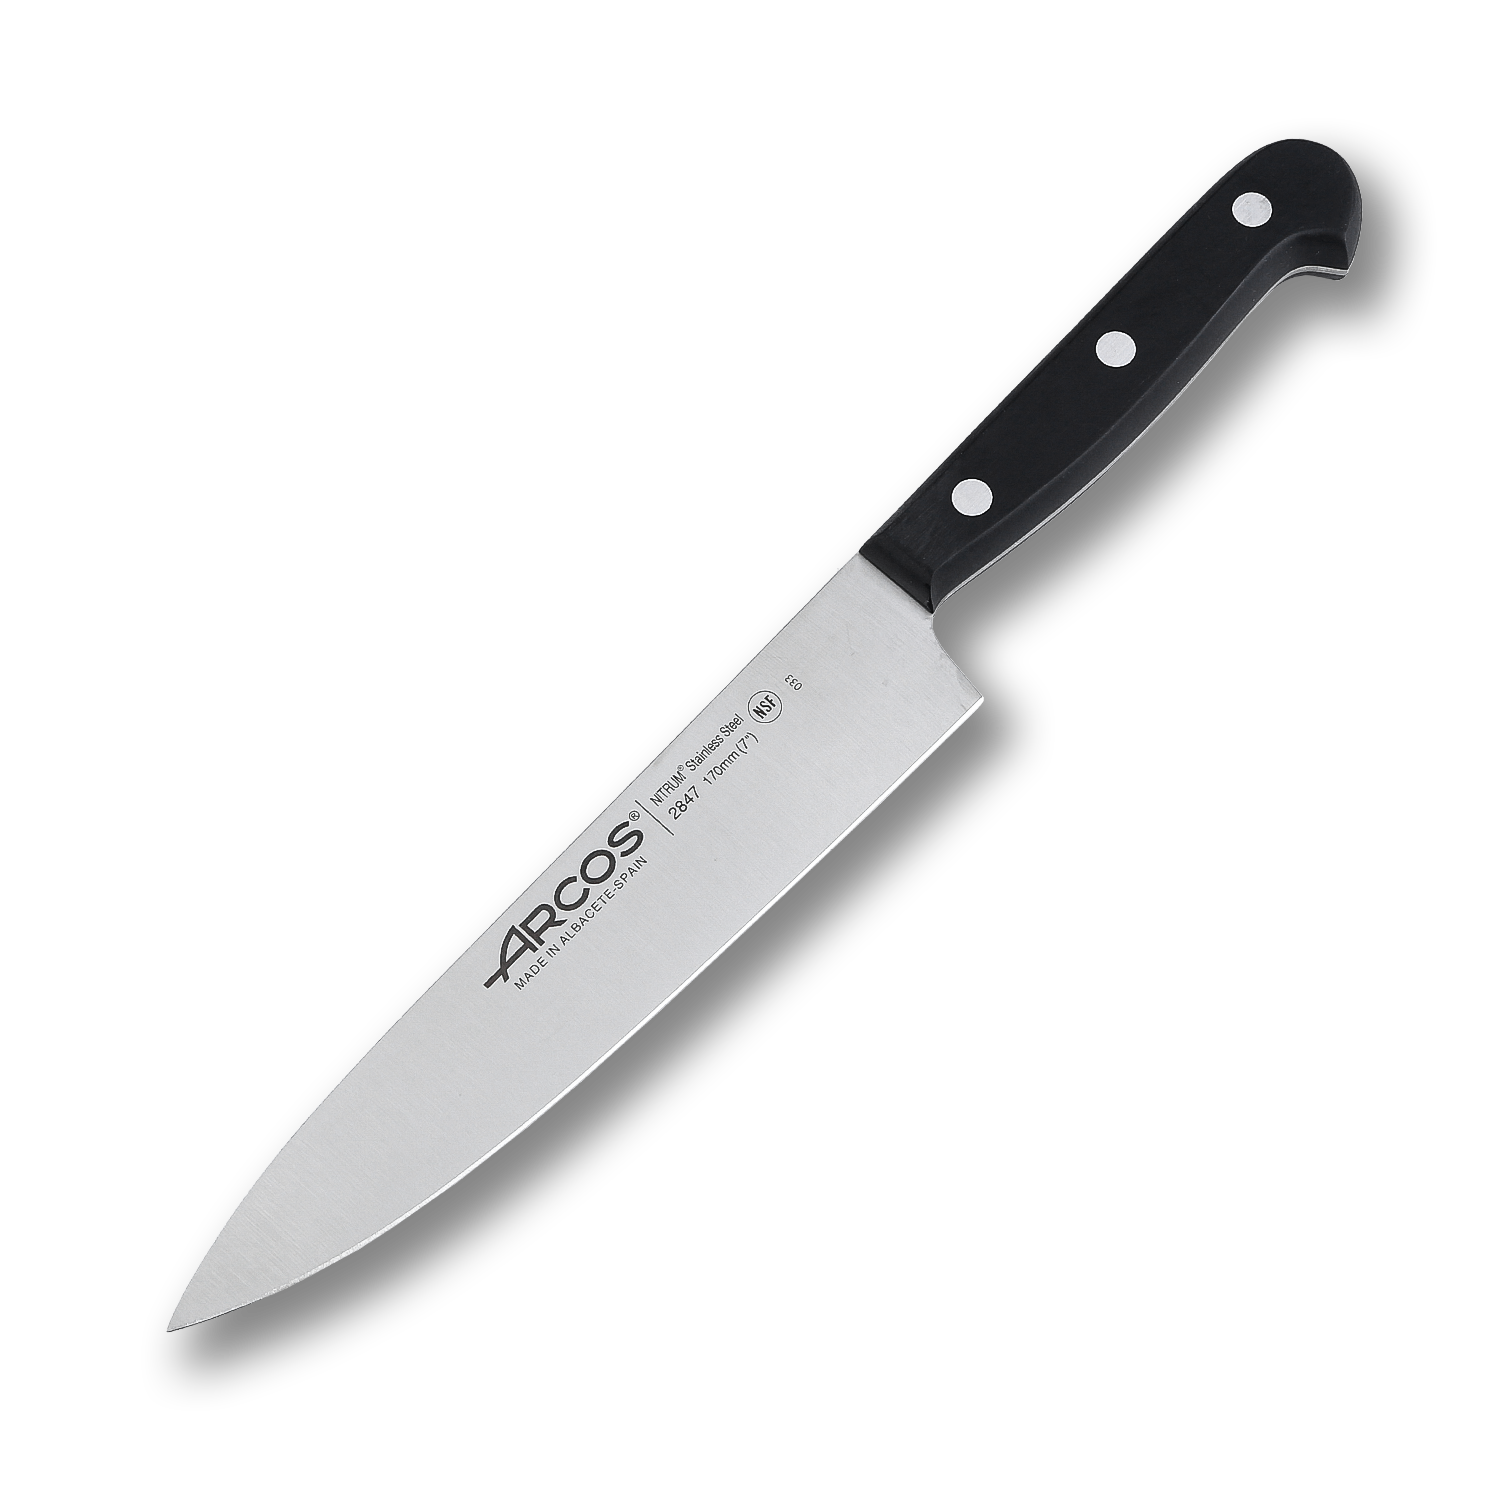 Поварской кухонный шеф-нож Arcos 17 см, прокатная молибден-ванадиевая сталь (X45 Cr Mo V 15) с фирменной криозакалкой NITRUM®, 284704